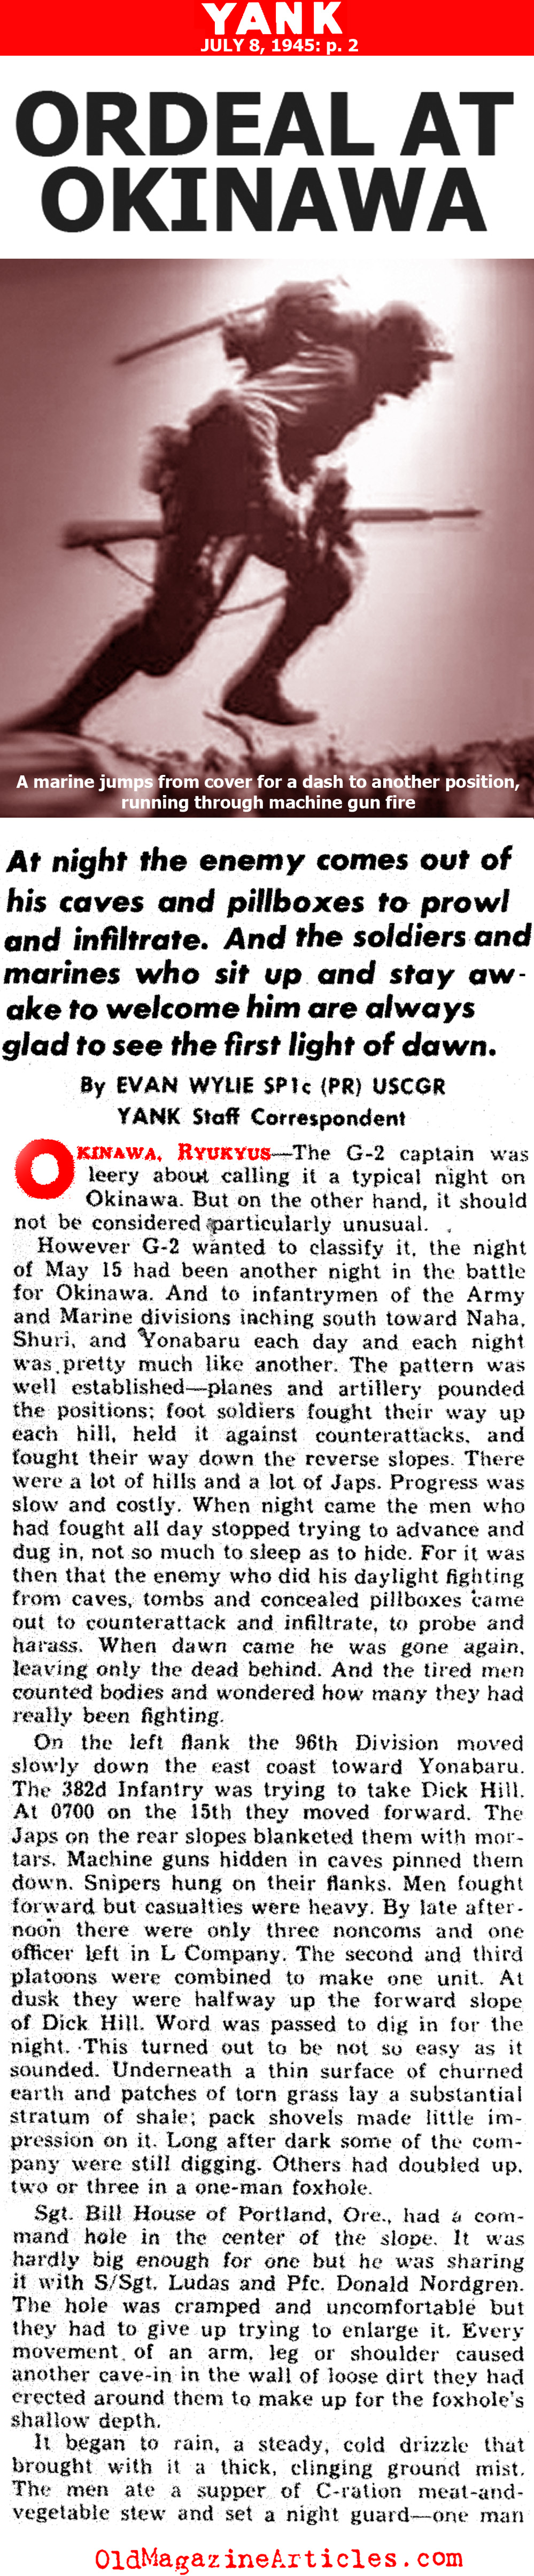 Contest On Okinawa (Yank Magazine, 1945)